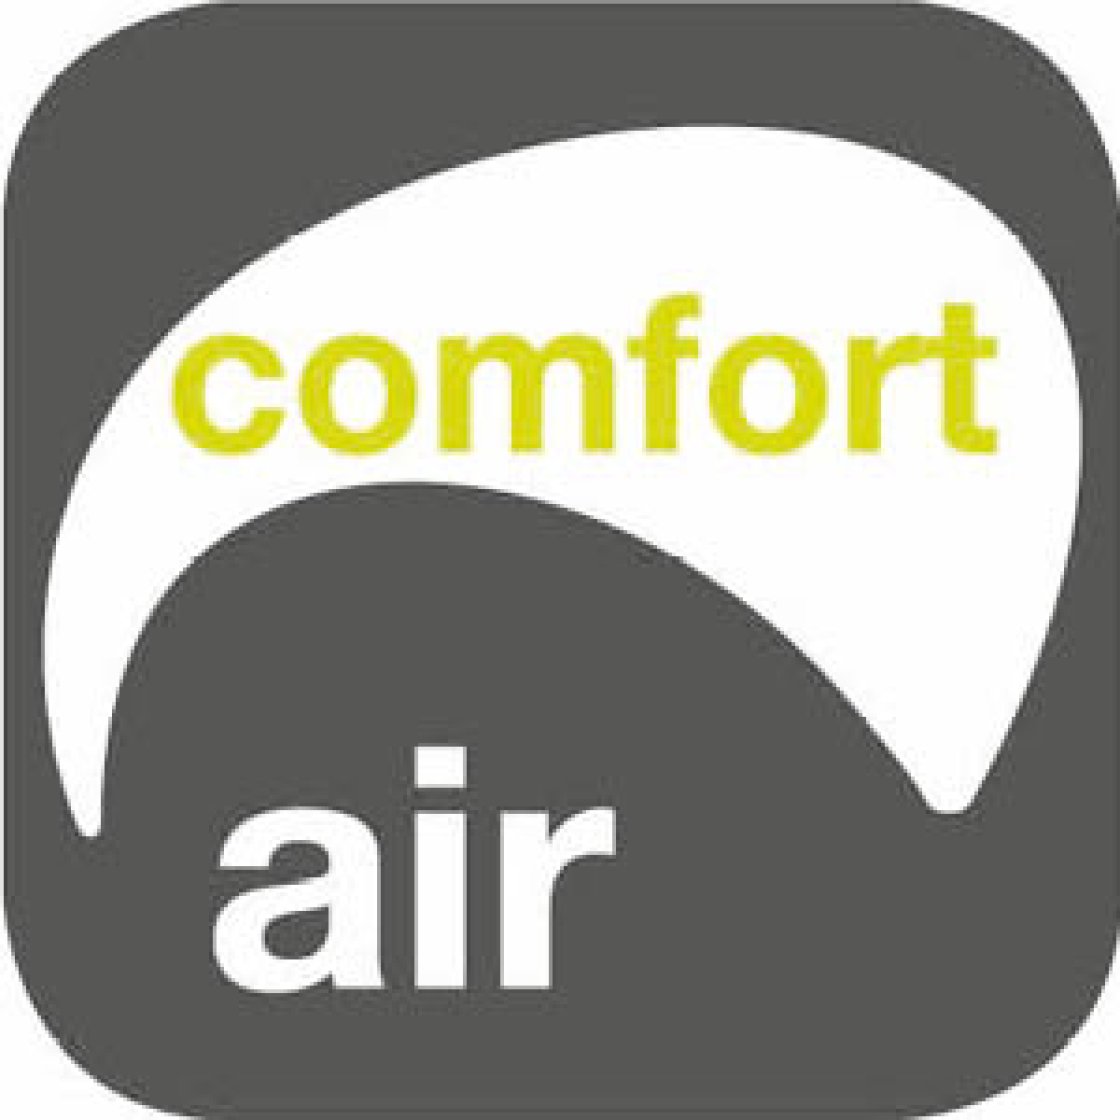 Comfort Air